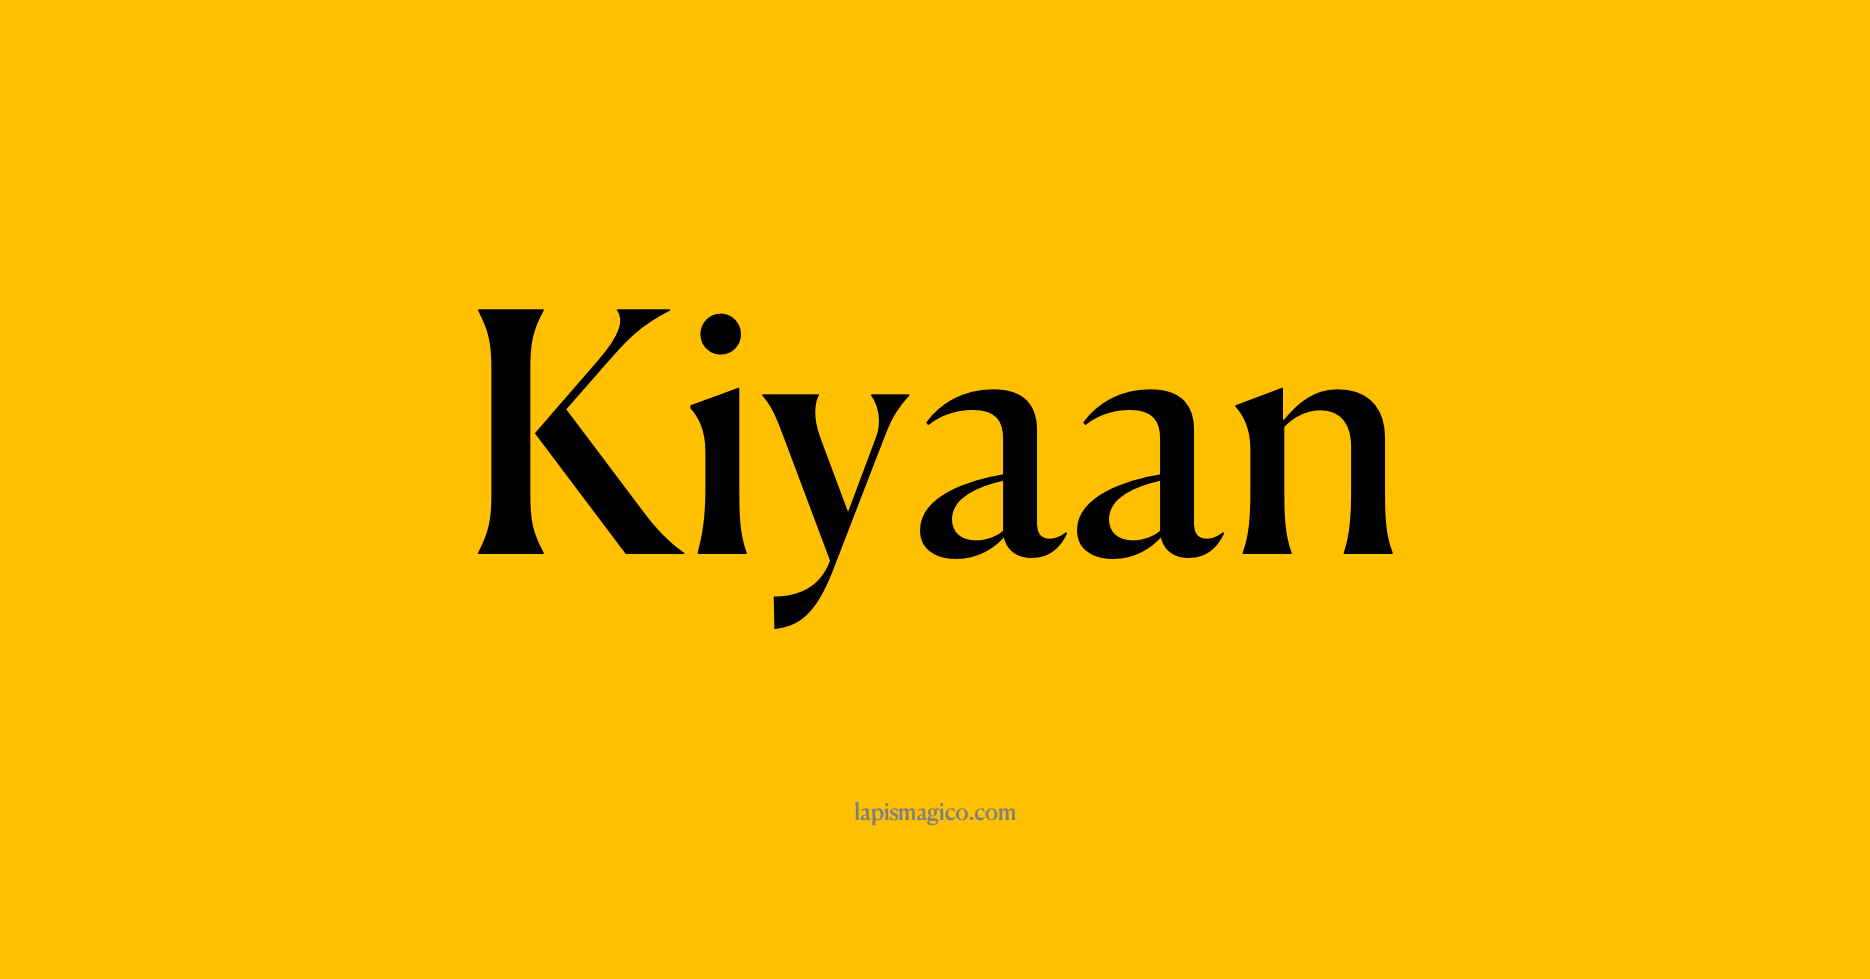 Nome Kiyaan